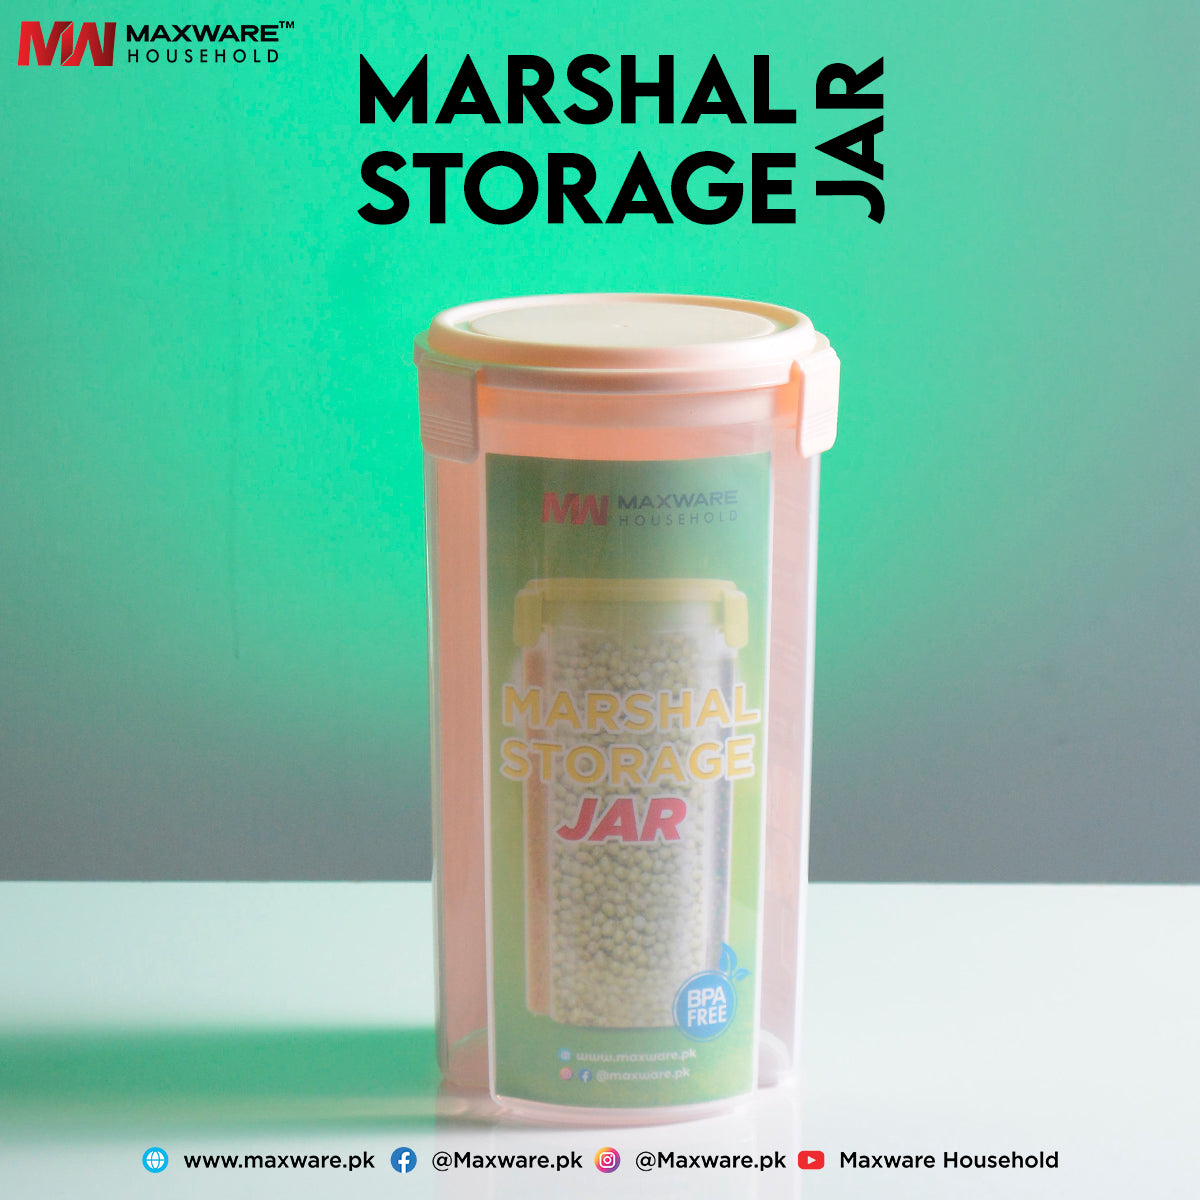 Marshall Storage Jar - Maxwaremart